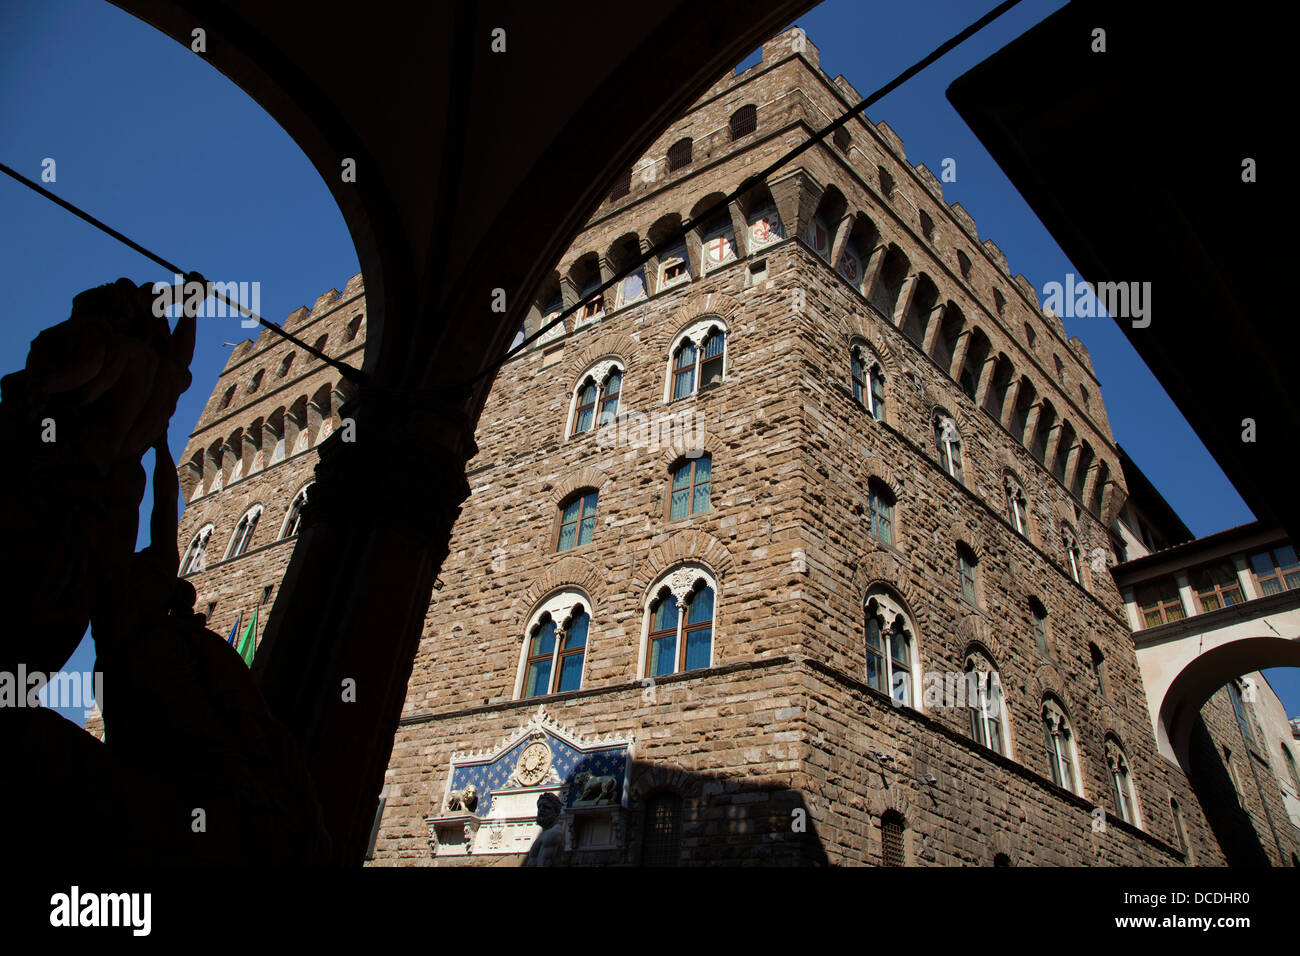 Détail de l'hôtel Palazzo Vecchio à Florence, Italie. Banque D'Images